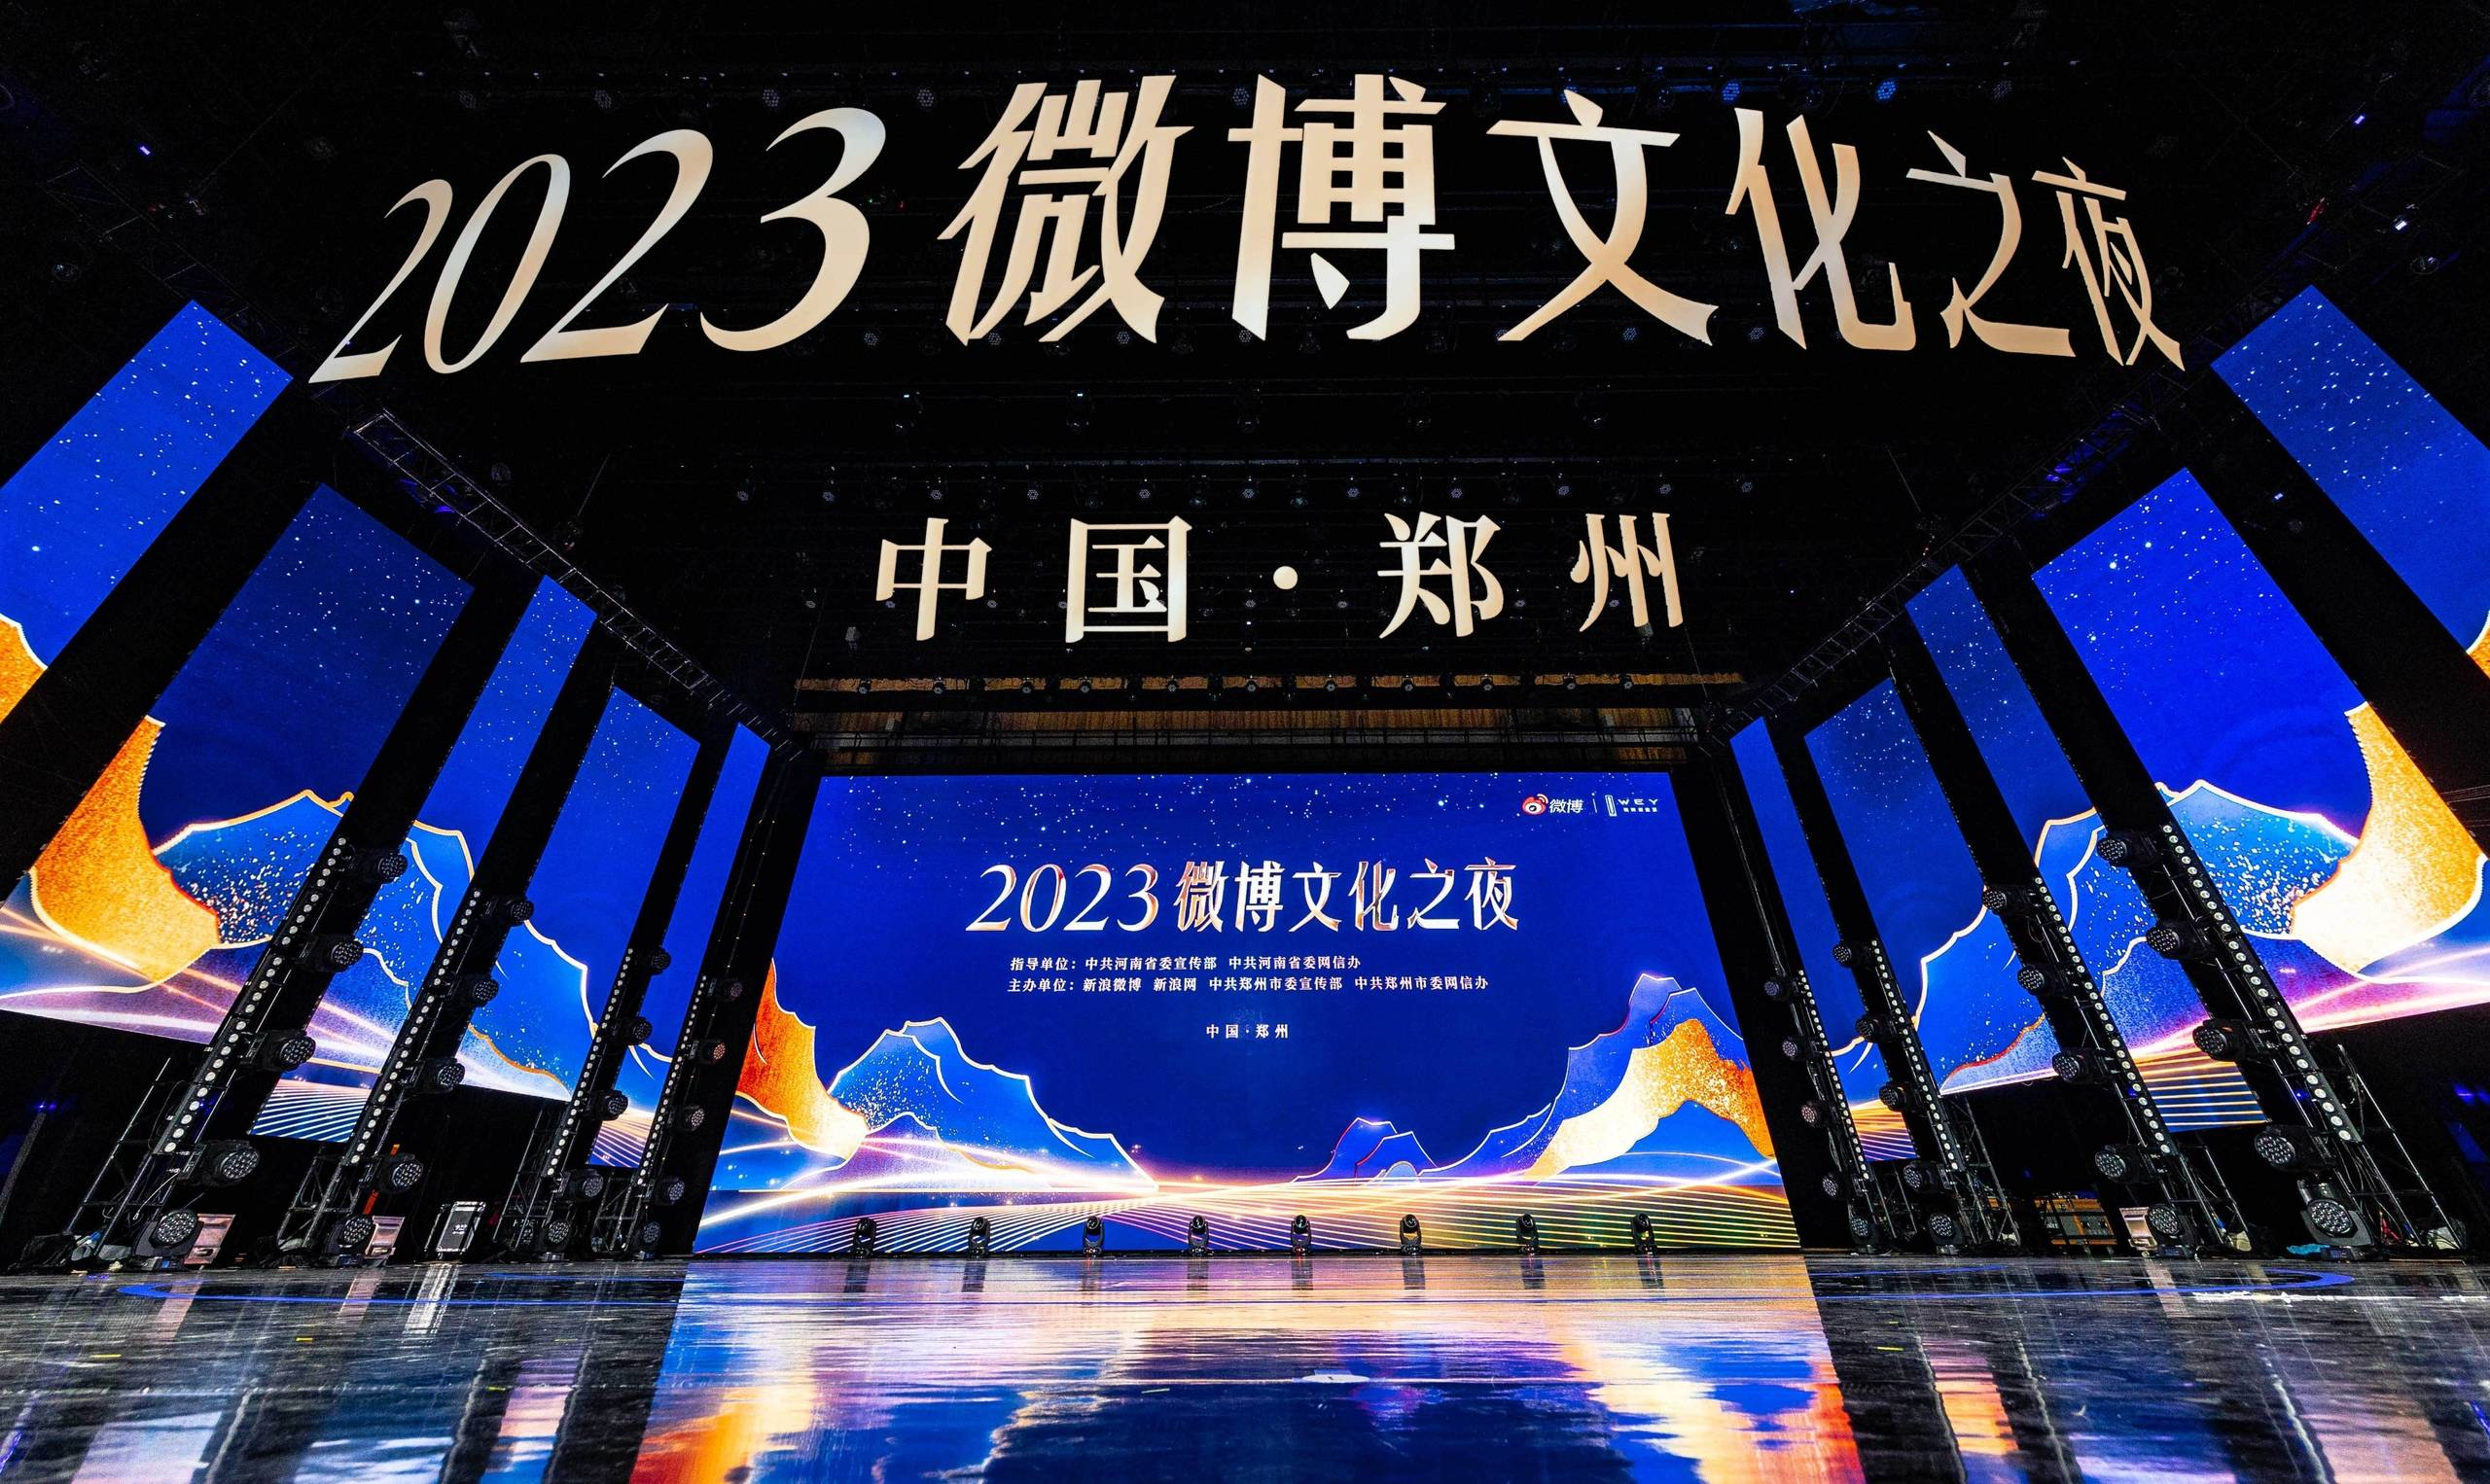 2023微博文化之夜闪耀郑州以文化IP创新推进文旅产业上行